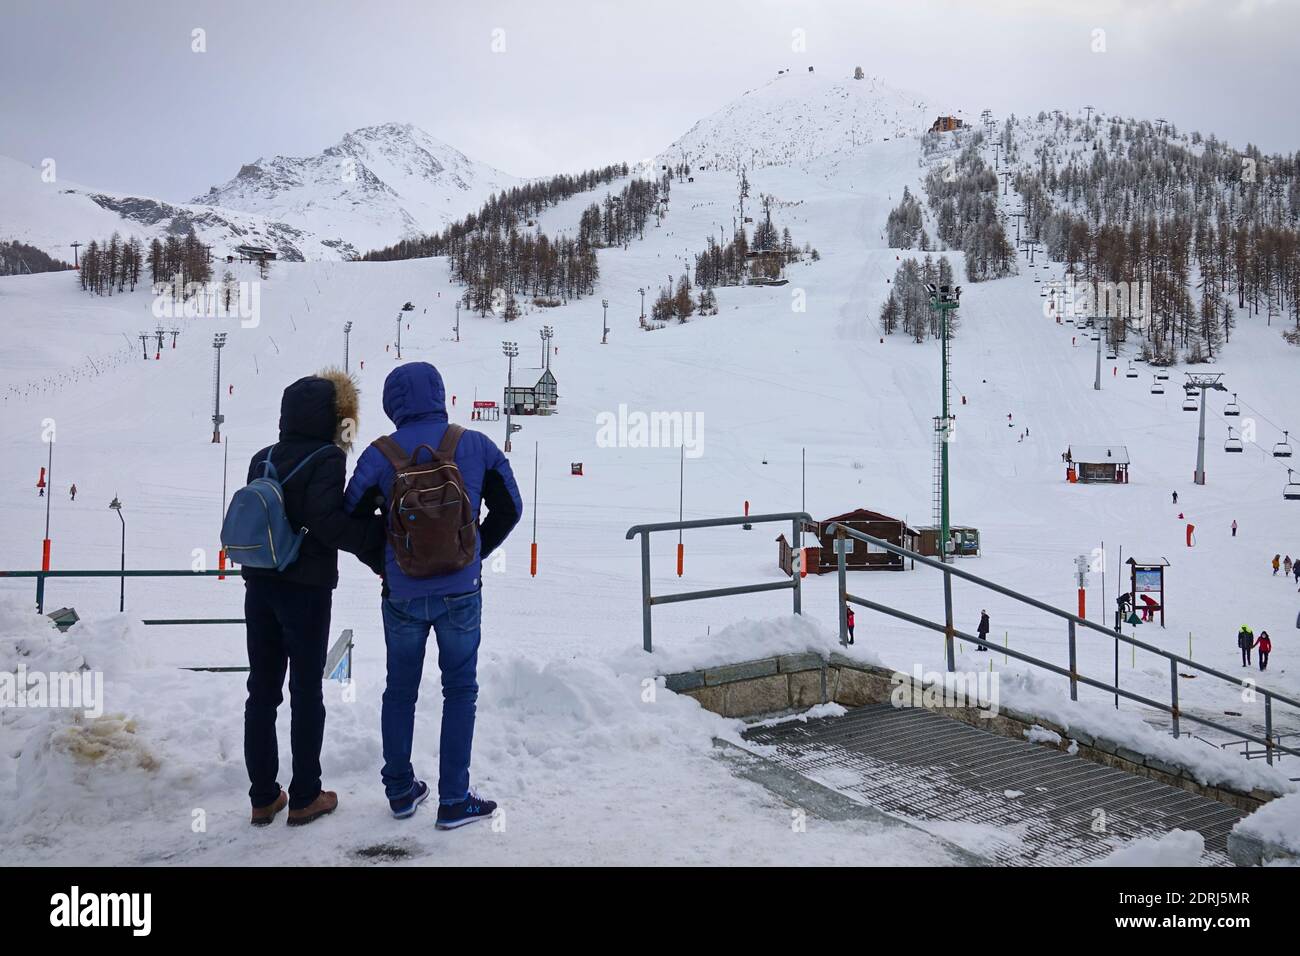 Les pistes de ski sont fermées en raison d'une pandémie à Noël, le couple regarde les pistes vides. Sestriere, Italie - décembre 2020 Banque D'Images